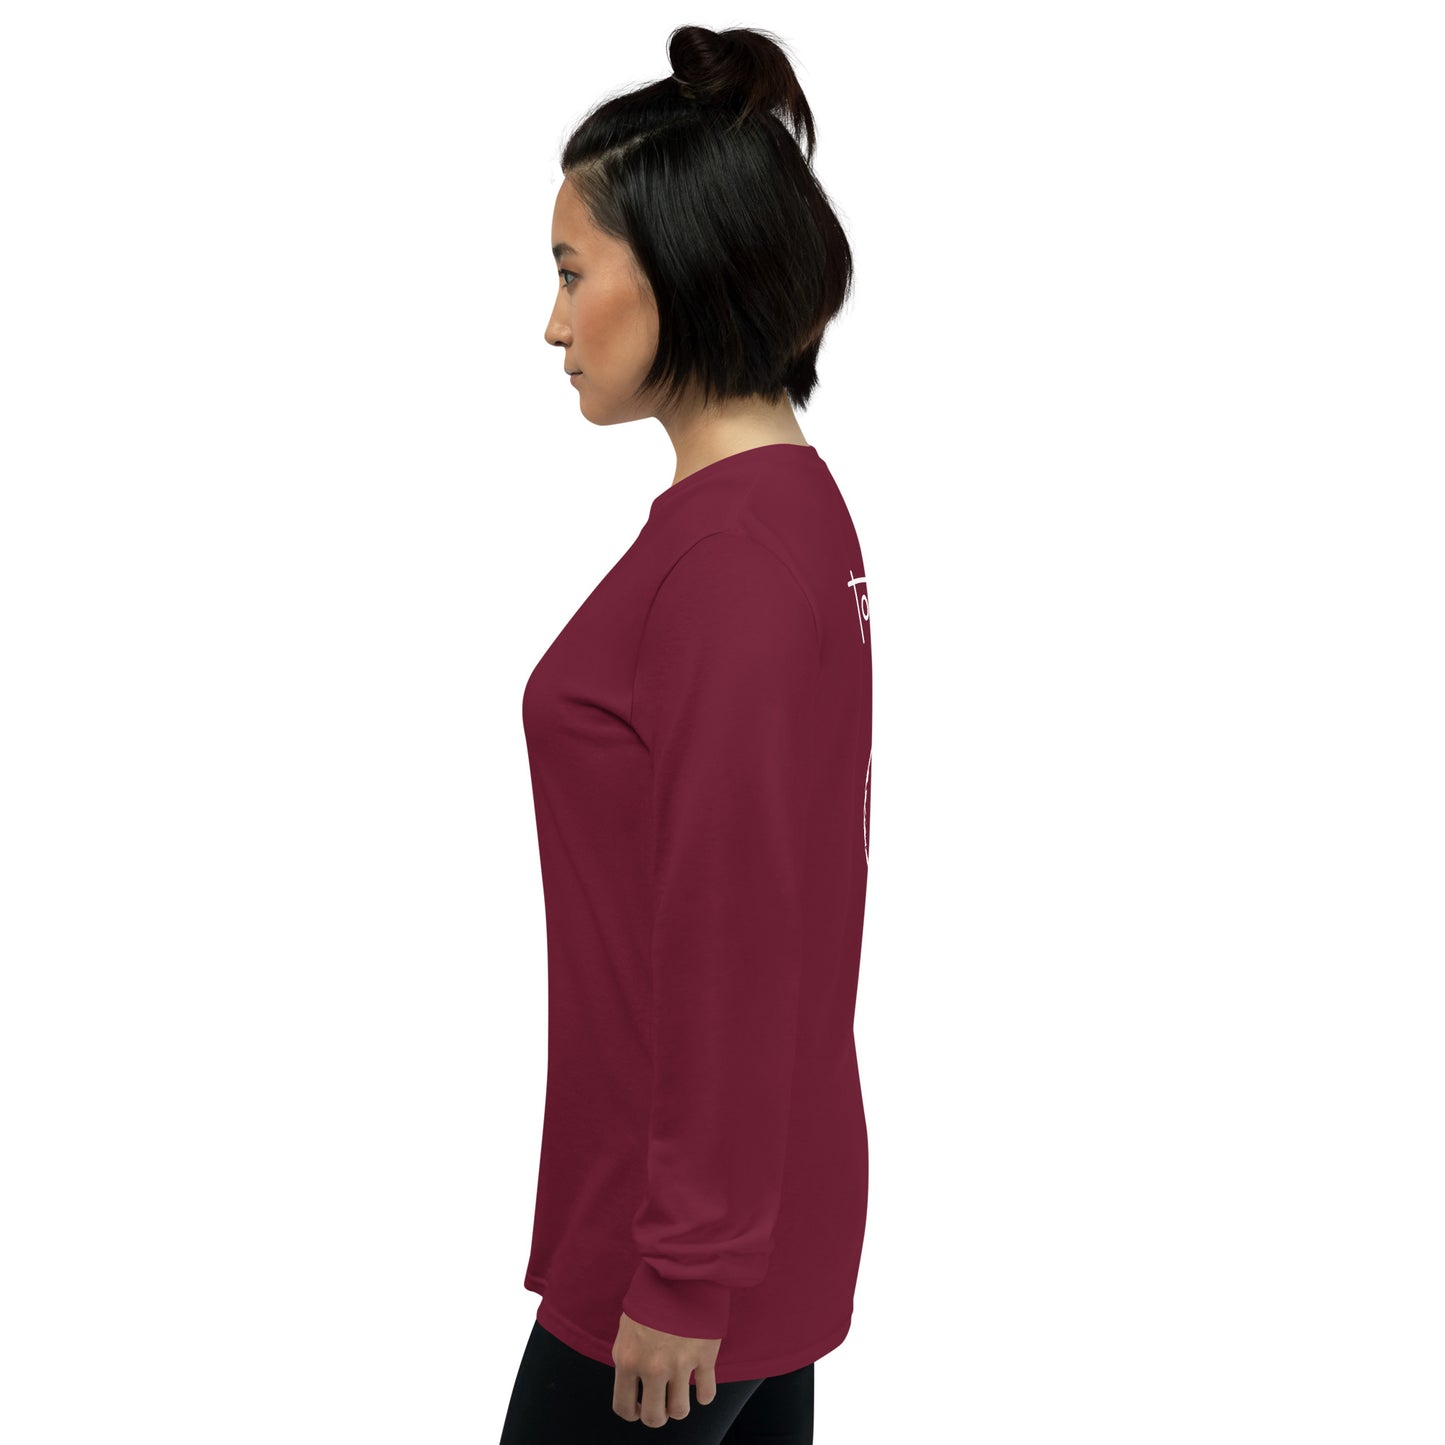 Sweatshirt clássica - Impressão nas costas